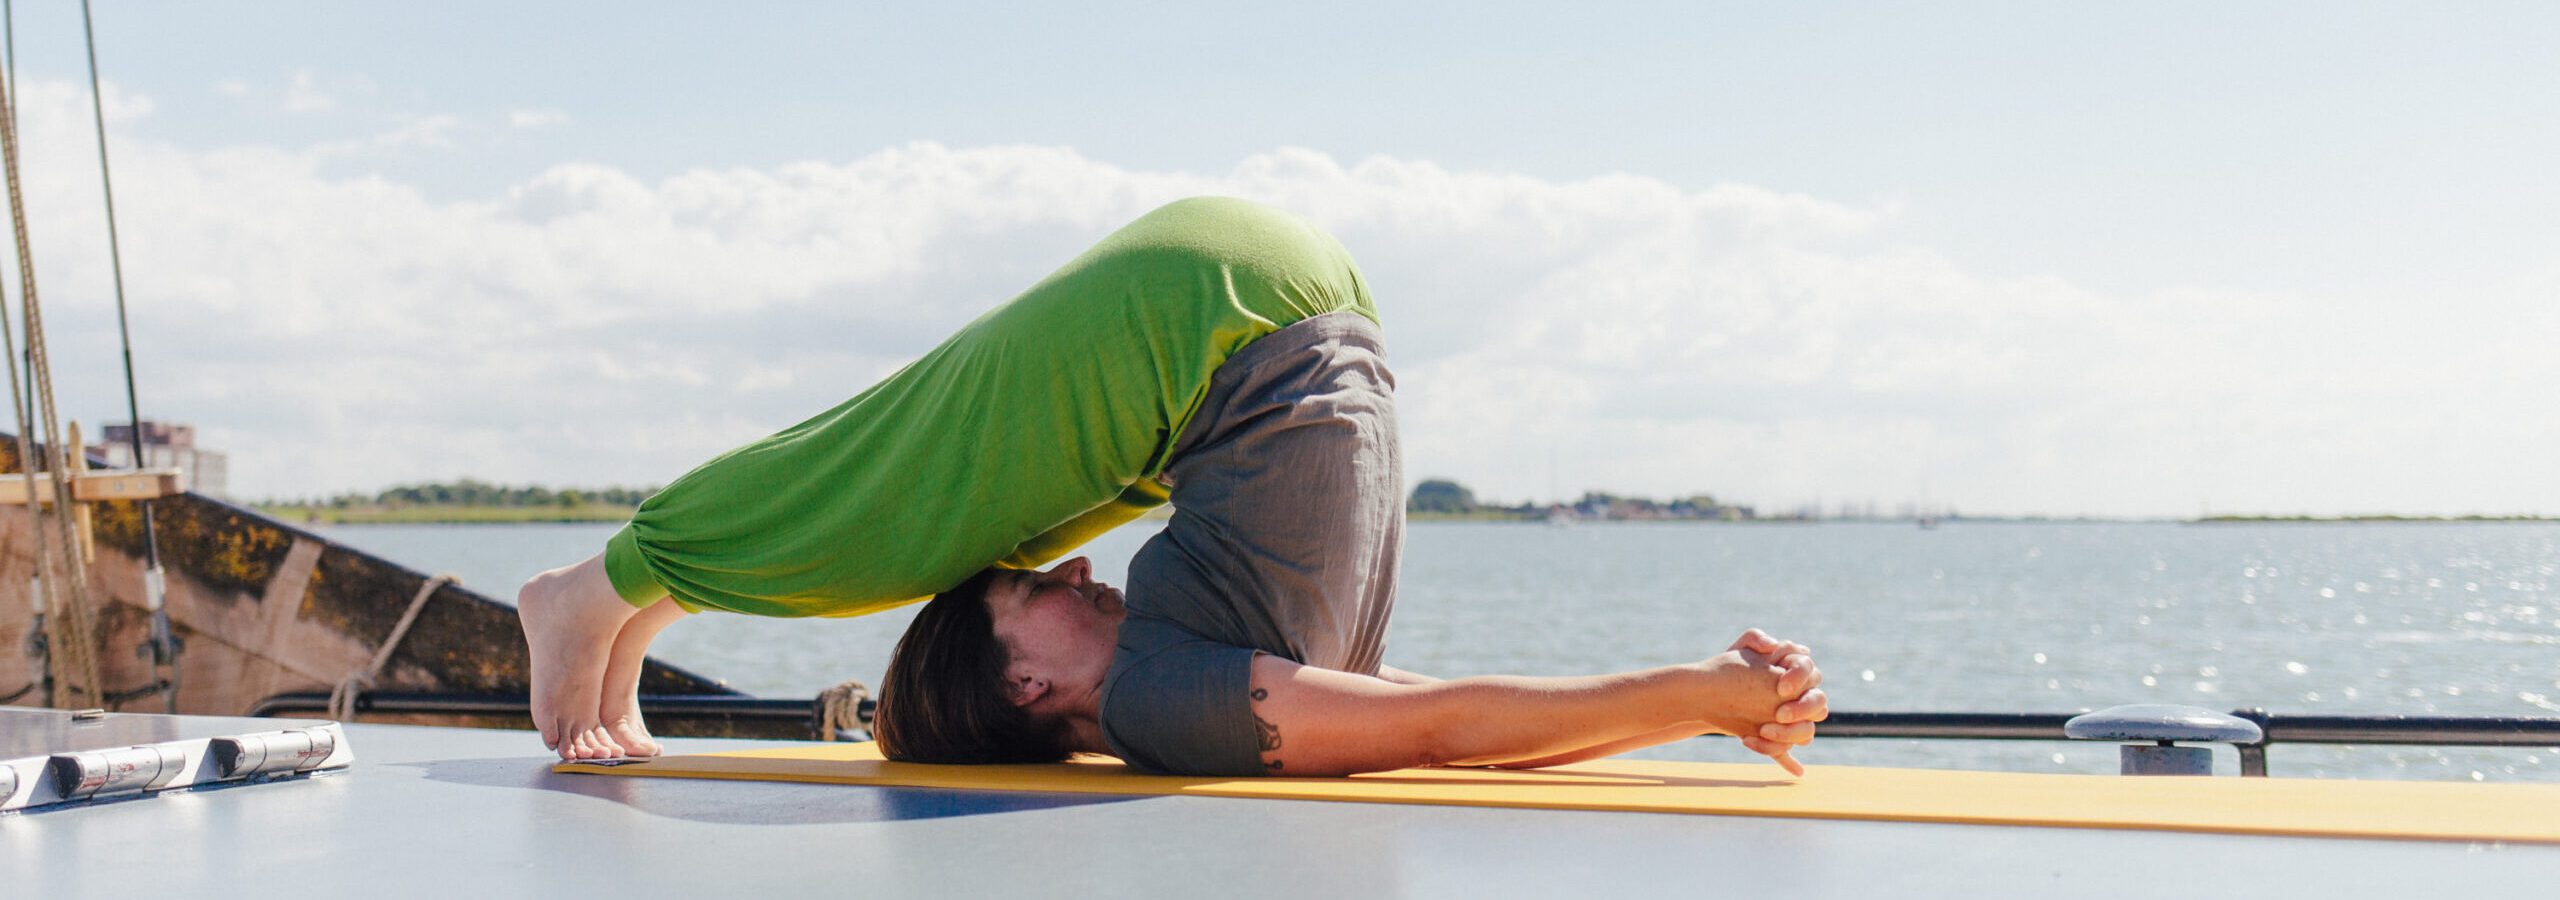 Yoga auf der Ambiance - der Pflug